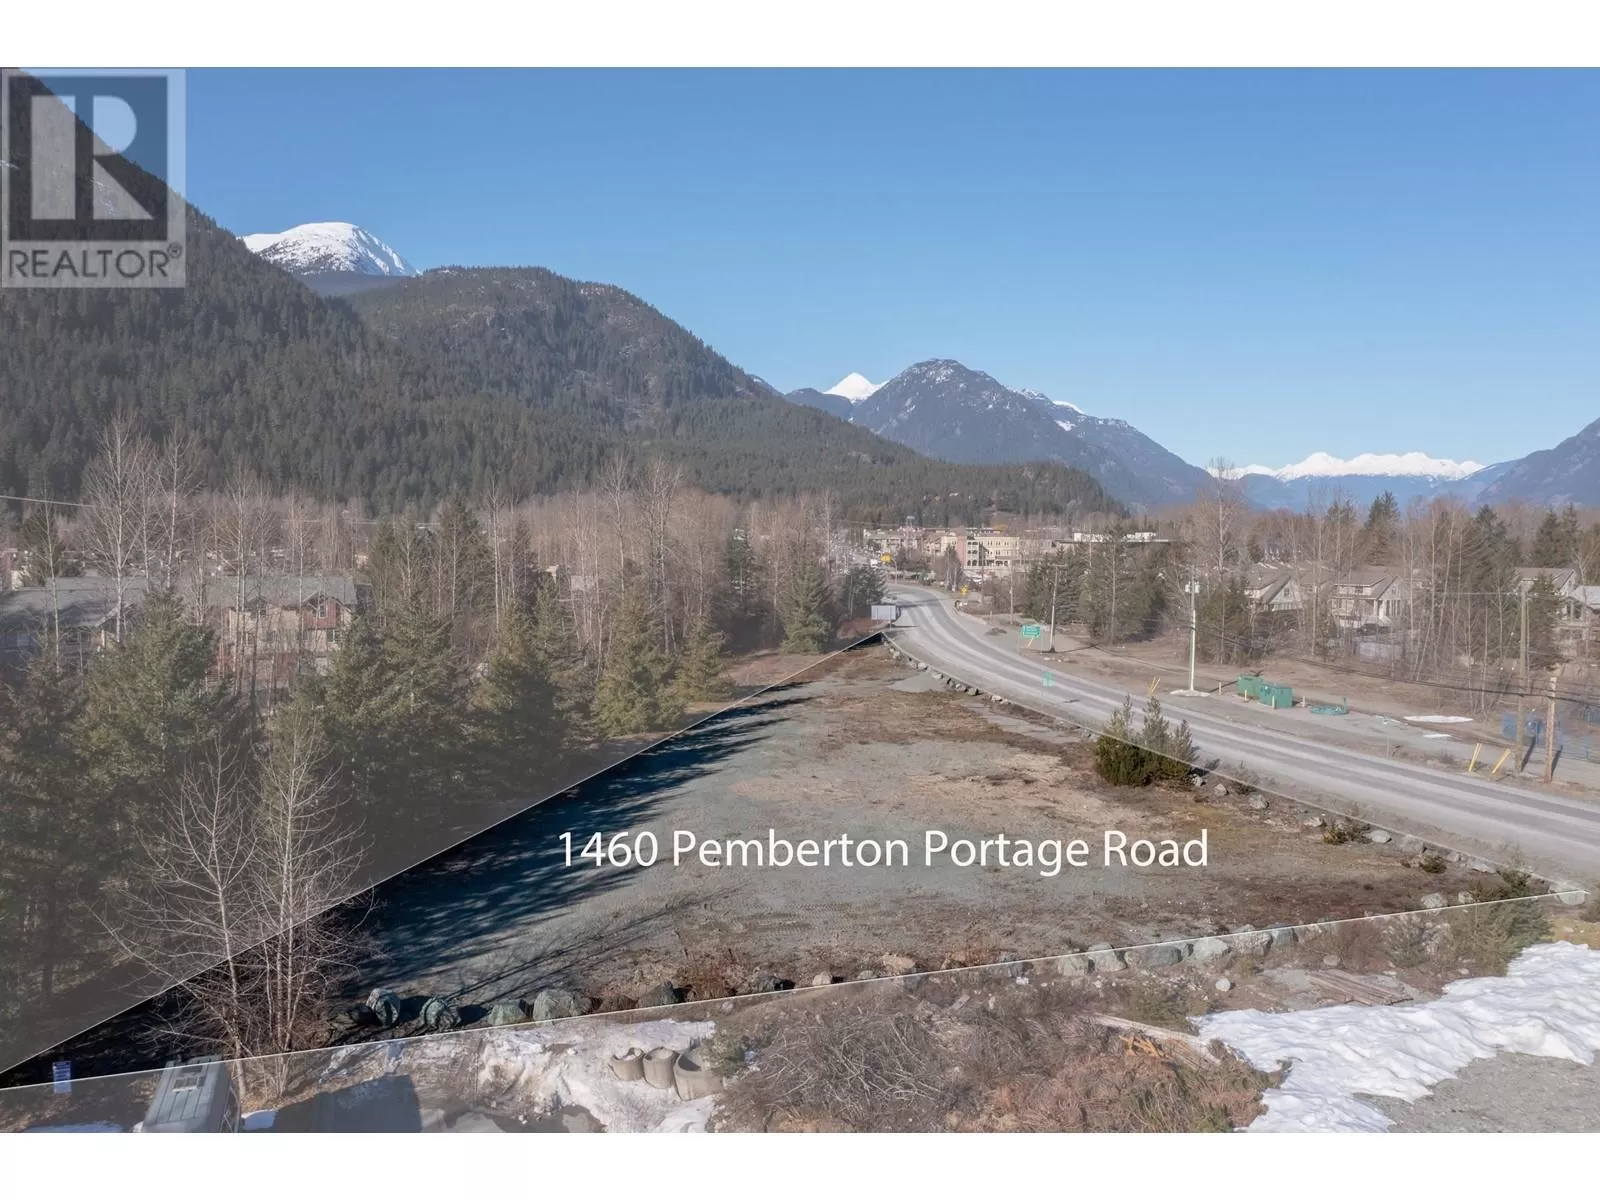 1460 Pemberton Portage Road, Pemberton, British Columbia V0N 2L0